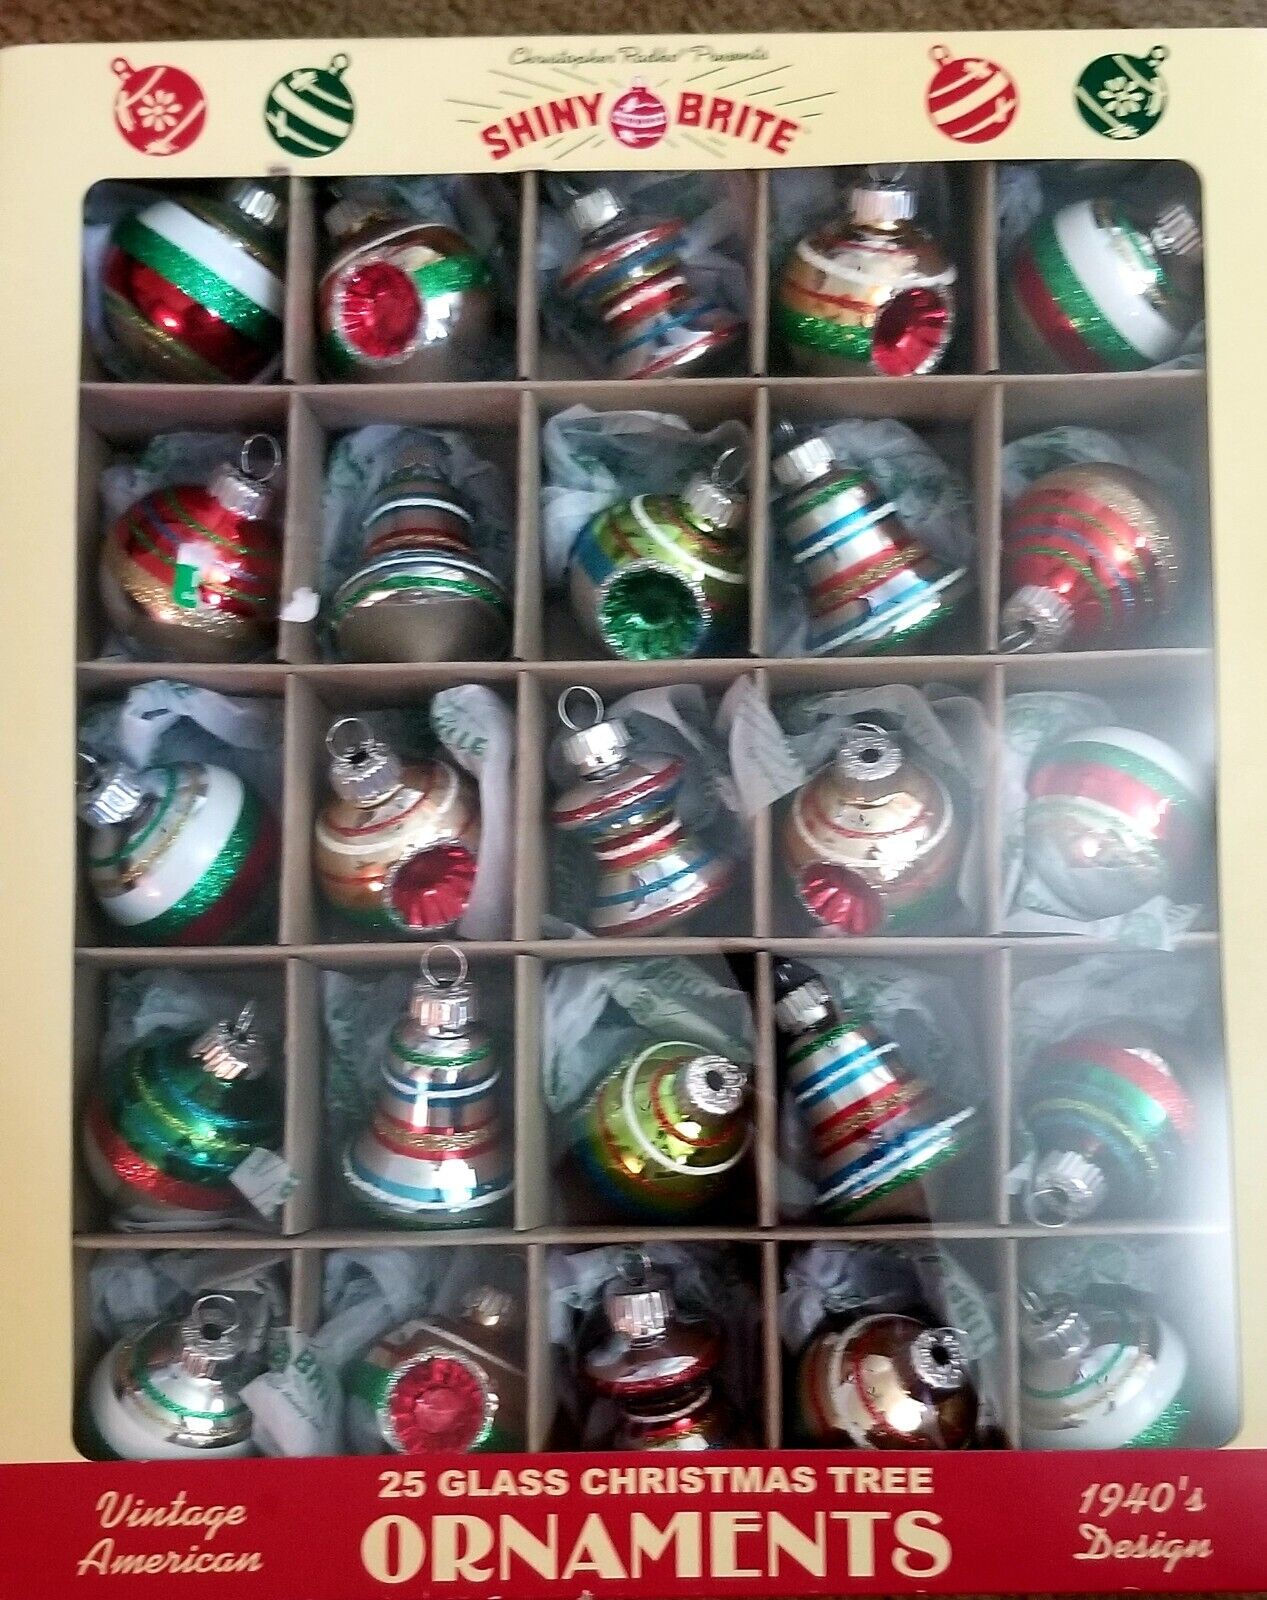 Shiny Brite Christopher Radko 25 glass Christmas Ornaments 1940s design NEW/BOX